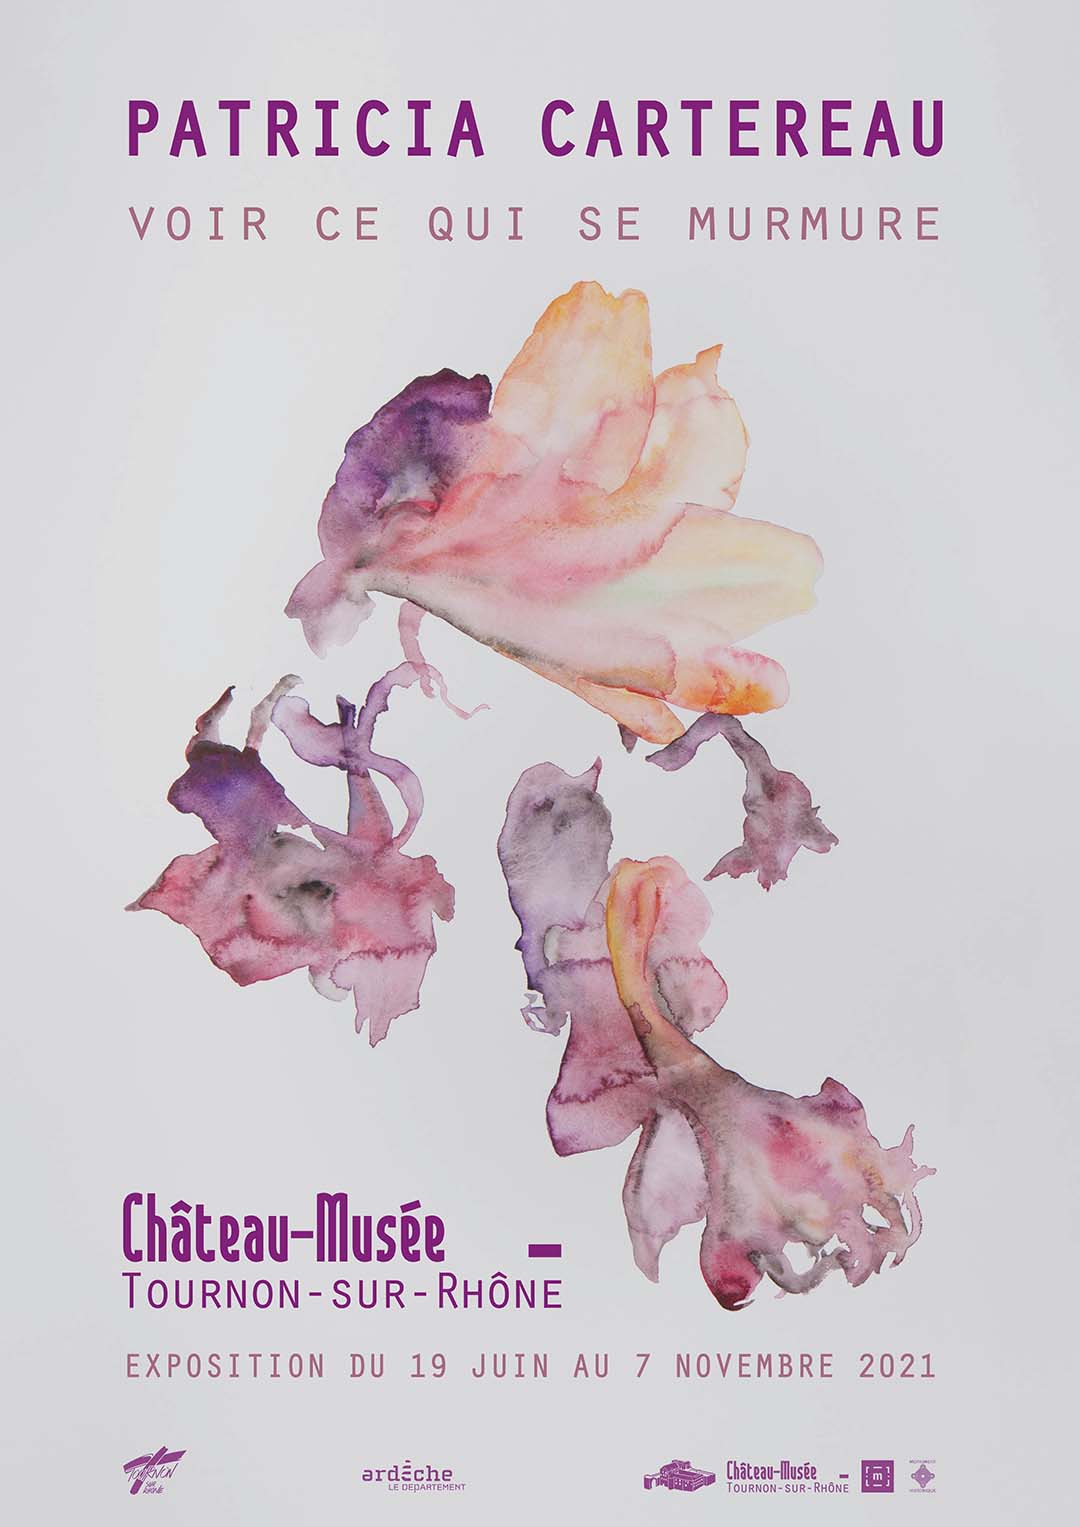 VOIR CE QUI SE MURMURE. Exposition de Patricia Cartereau. Du 19 juin au 7 novembre 2021 au Château-musée de Tournon-sur-Rhône.